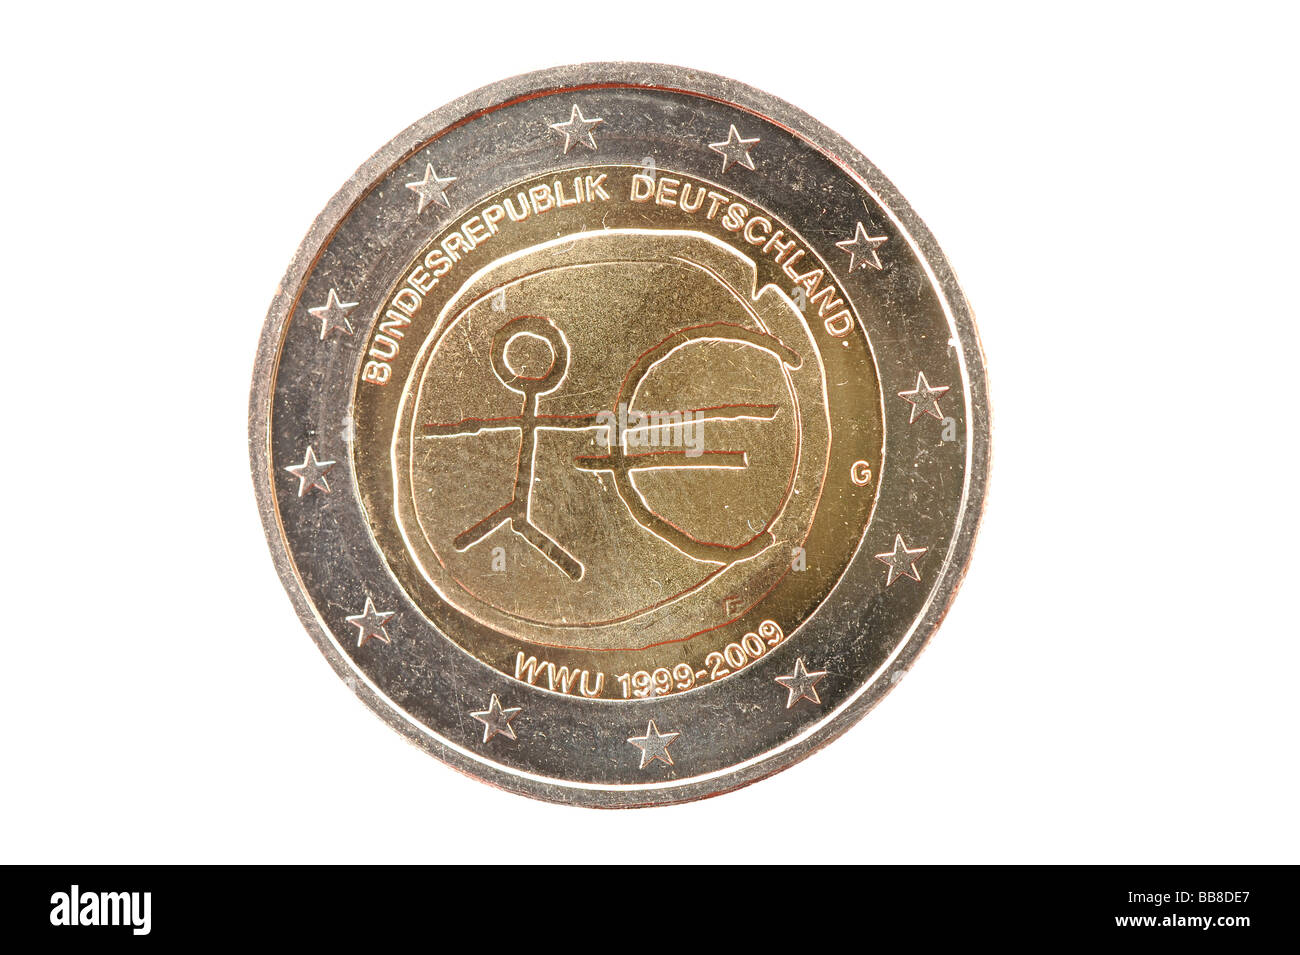 Gemeinschaftsausgabe, Ae2 Gedenkmünze, 10. Jahrestag des Euro, deutsche Ausgabe, Rückseite Stockfoto